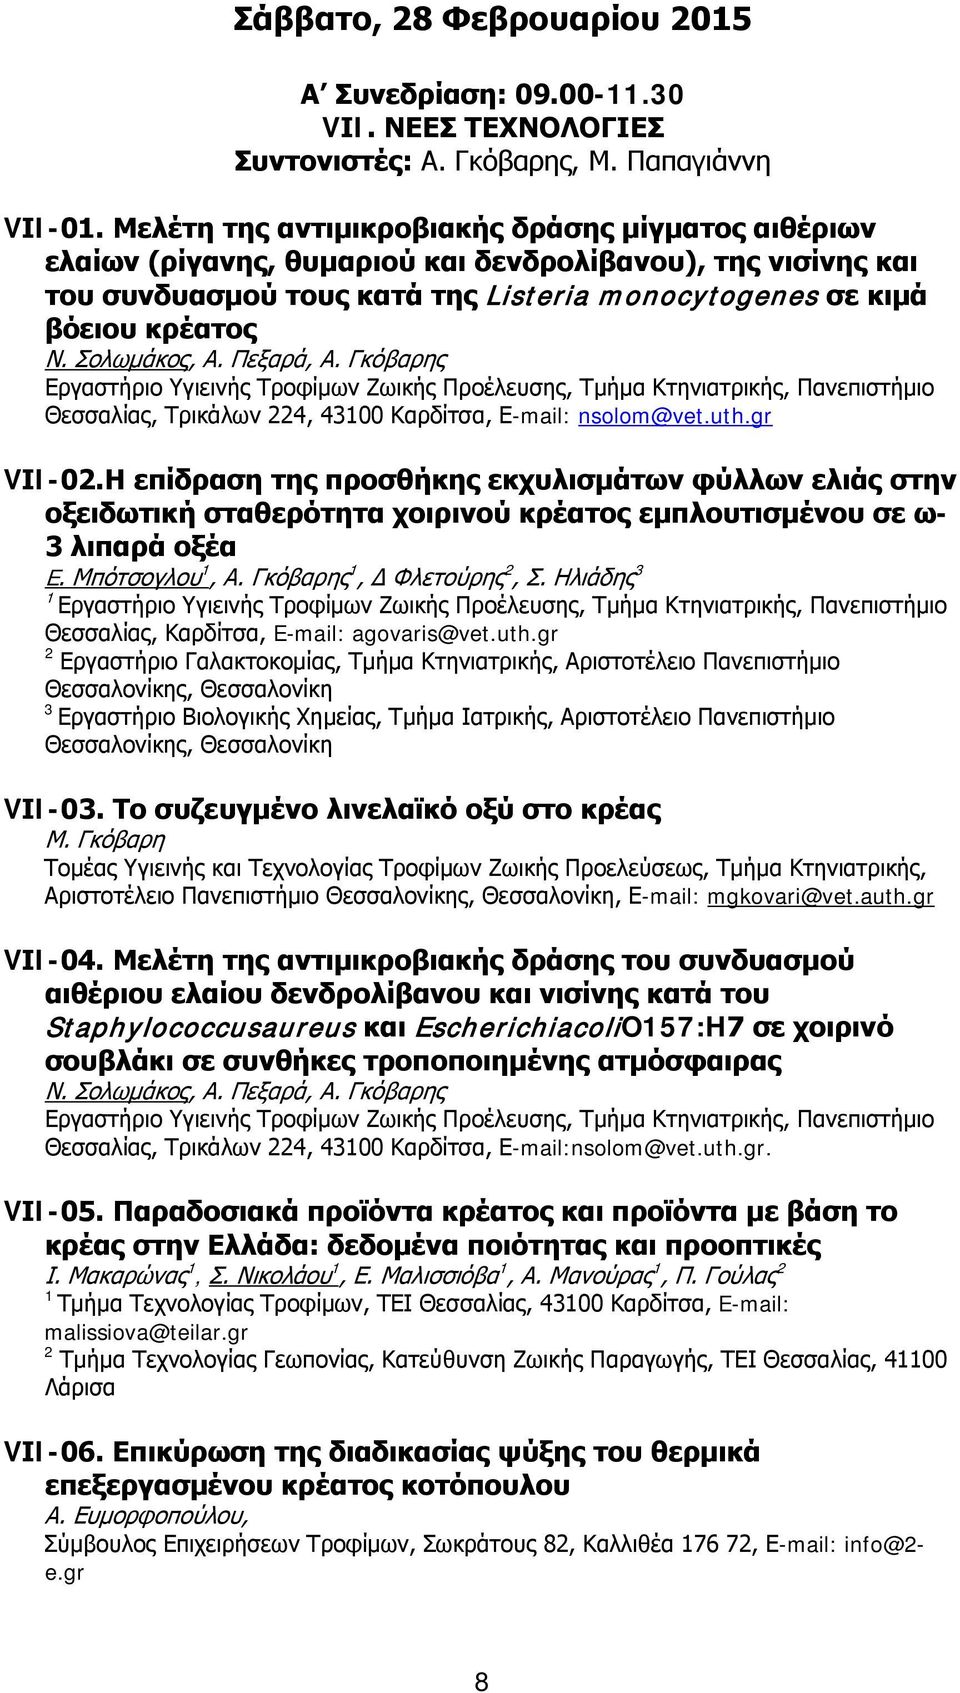 Σολωμάκος, Α. Πεξαρά, Α. Γκόβαρης Εργαστήριο Υγιεινής Τροφίμων Ζωικής Προέλευσης, Τμήμα Κτηνιατρικής, Πανεπιστήμιο Θεσσαλίας, Τρικάλων 4, 4300 Καρδίτσα, E-mail: nsolom@vet.uth.gr VΙI-0.